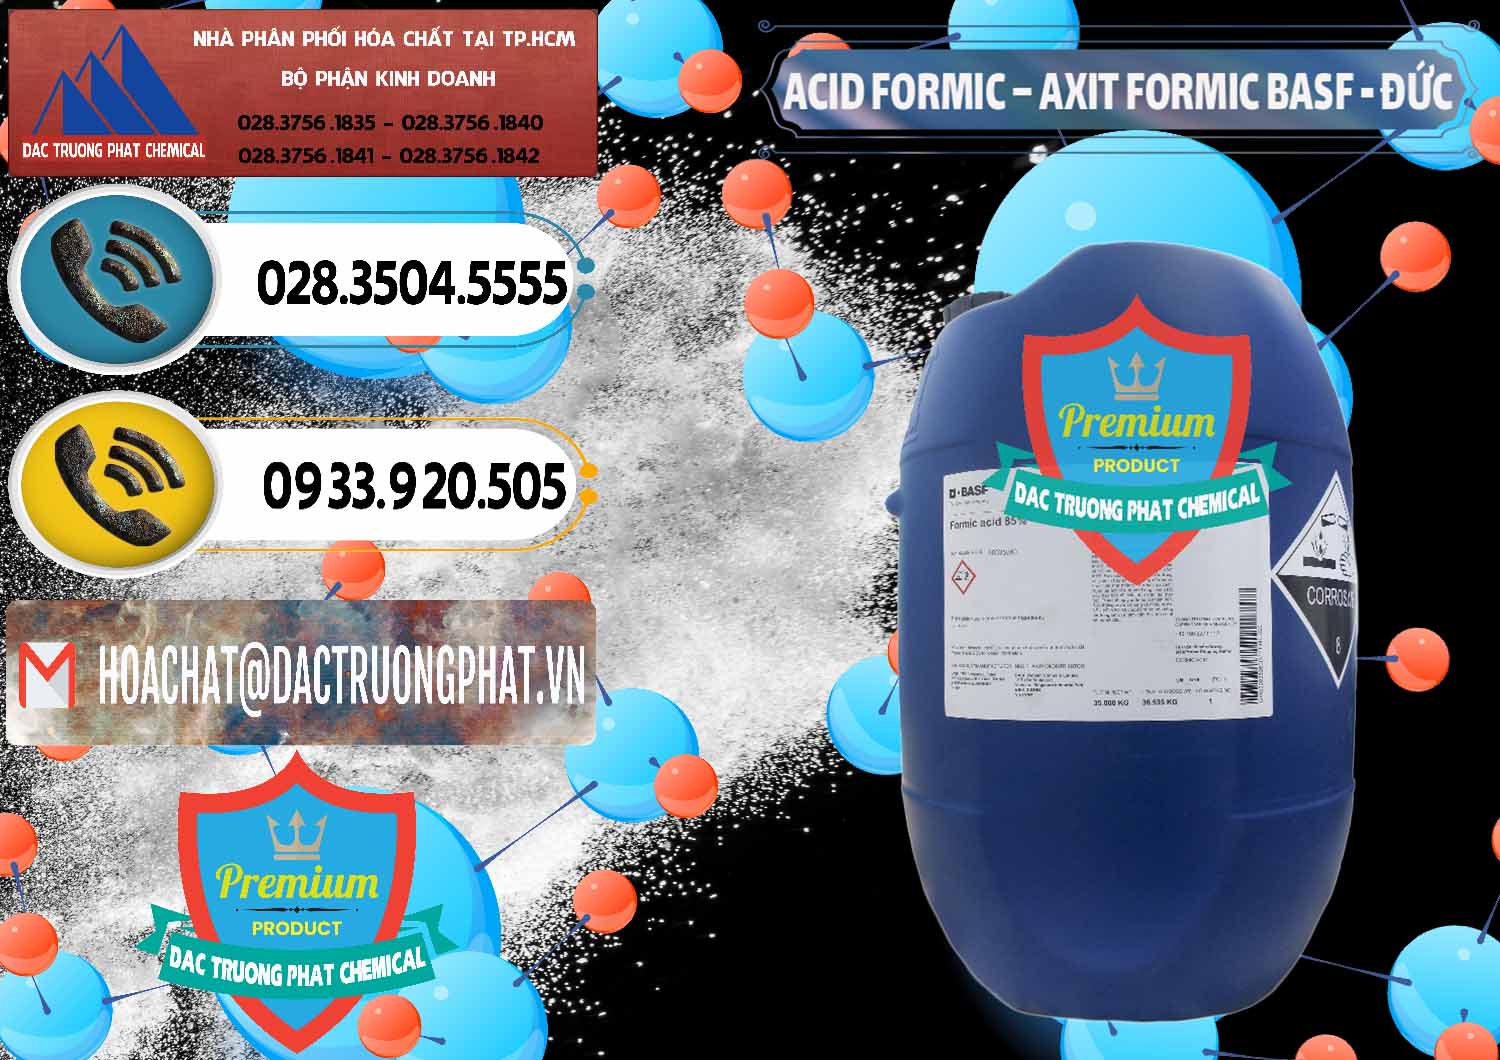 Đơn vị chuyên nhập khẩu ( bán ) Acid Formic - Axit Formic BASF Đức Germany - 0028 - Bán & cung cấp hóa chất tại TP.HCM - hoachatdetnhuom.vn